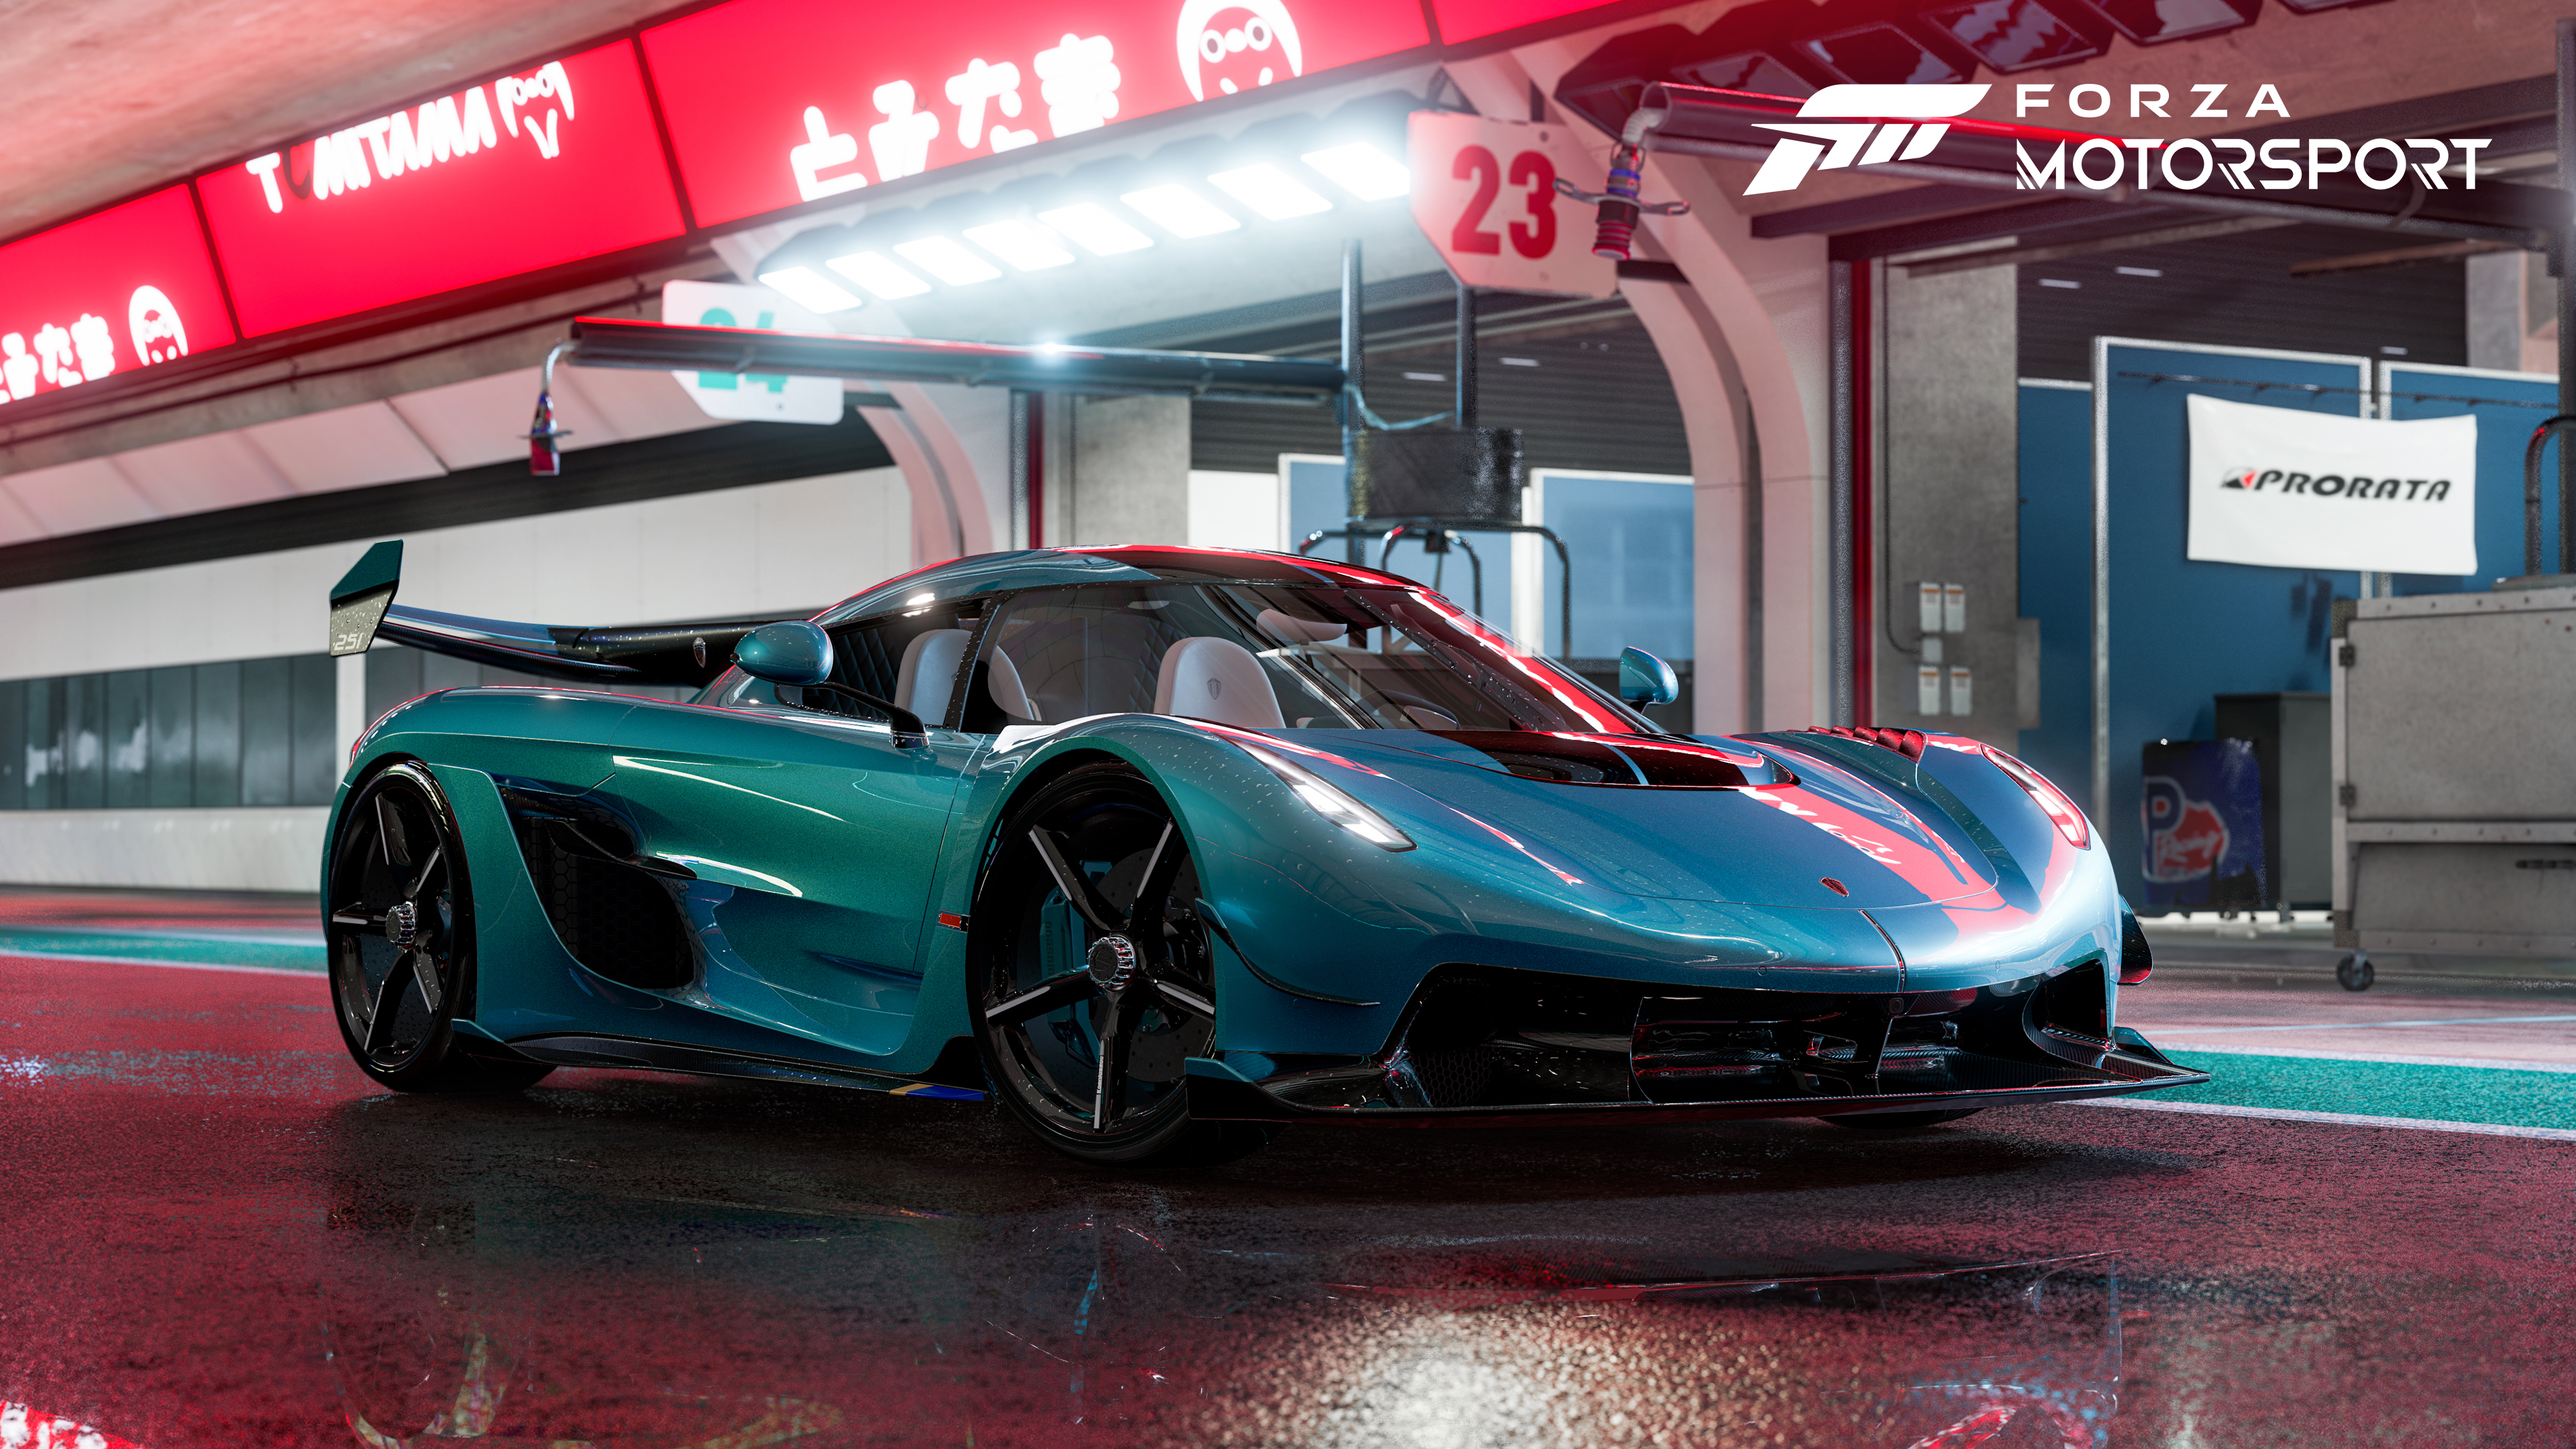 Xbox Series X के लिए Forza Motorsport में सुंदर विवरण में प्रस्तुत की गई कार।